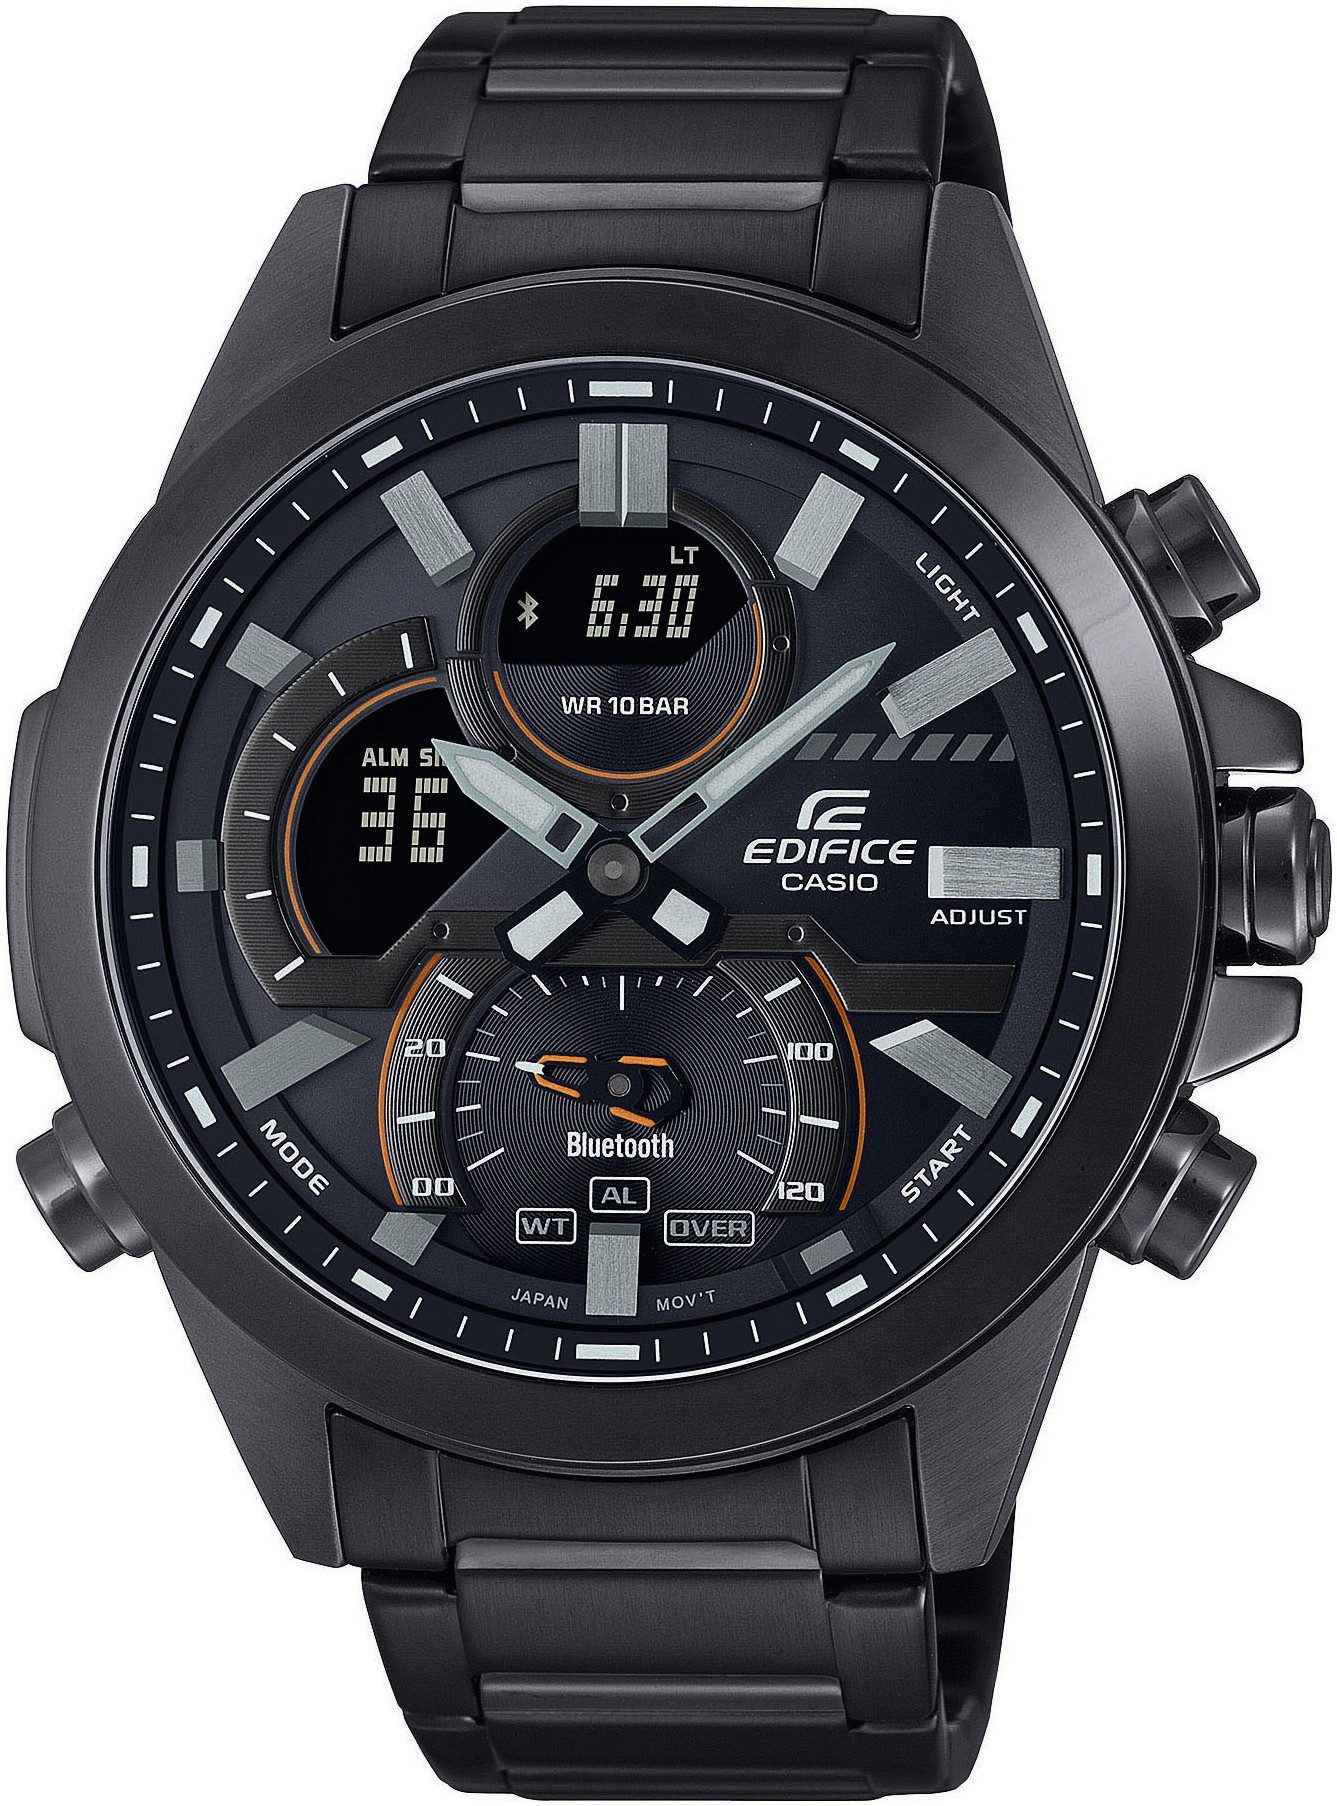 CASIO EDIFICE Smartwatch, Armbanduhr, Herrenuhr, Bluetooth, Stoppfunktion, Weltzeit, digital